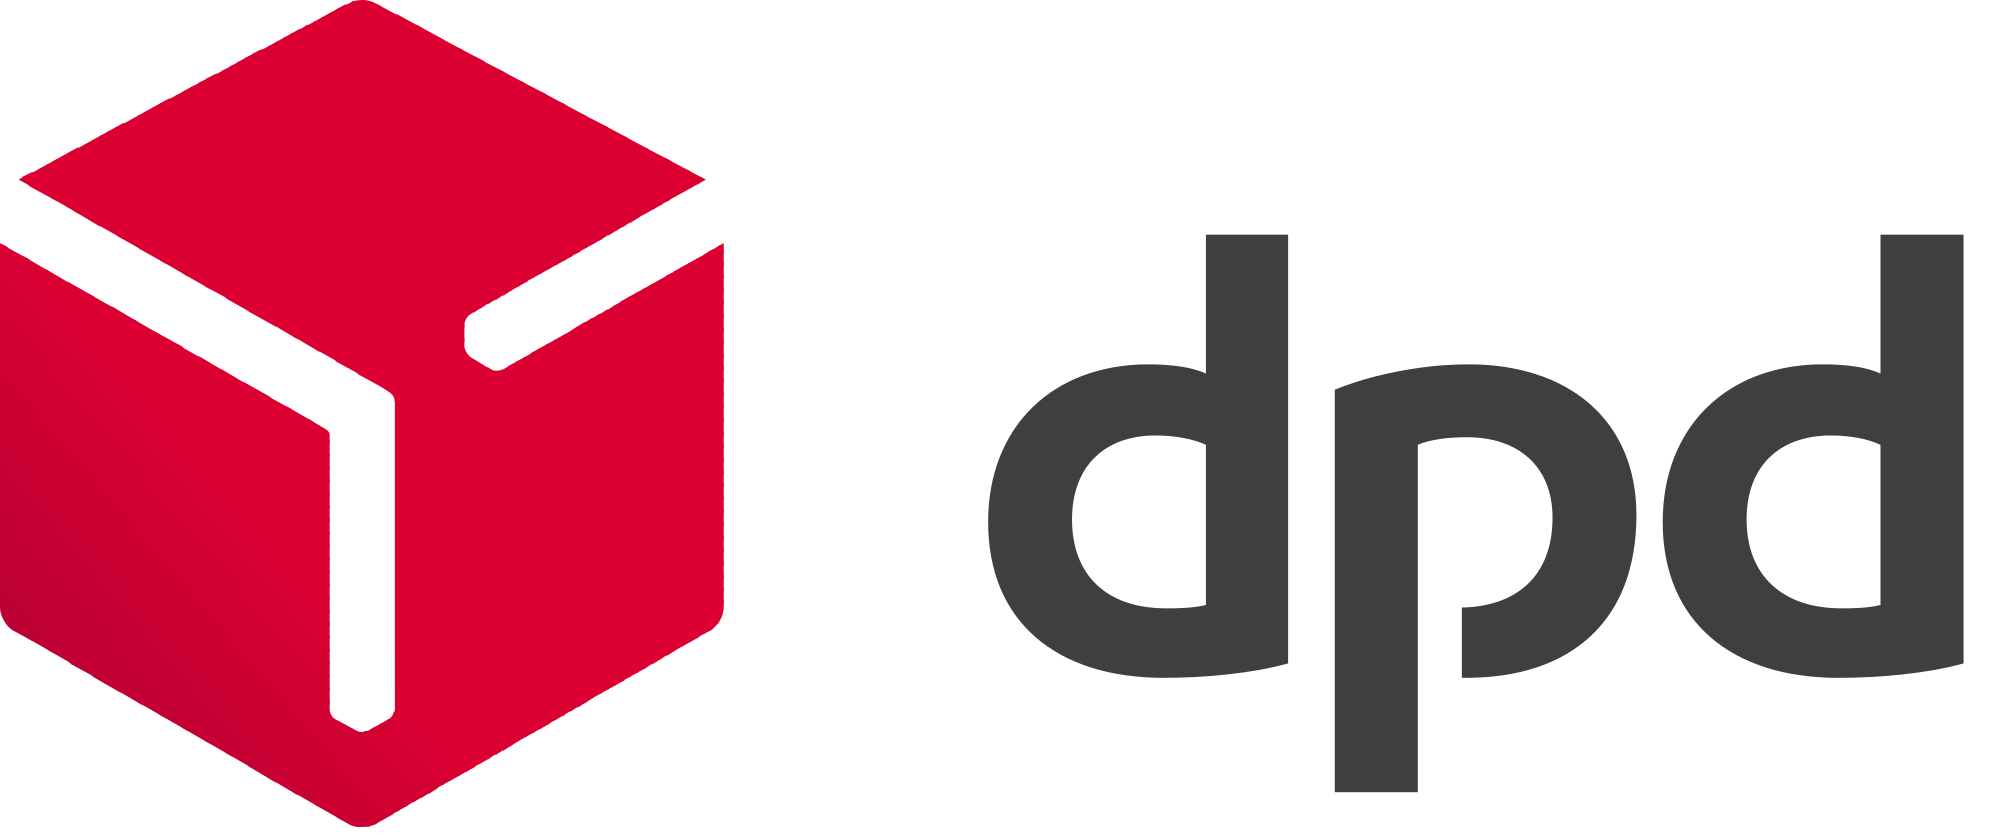 DPD_logo_(2015).svg